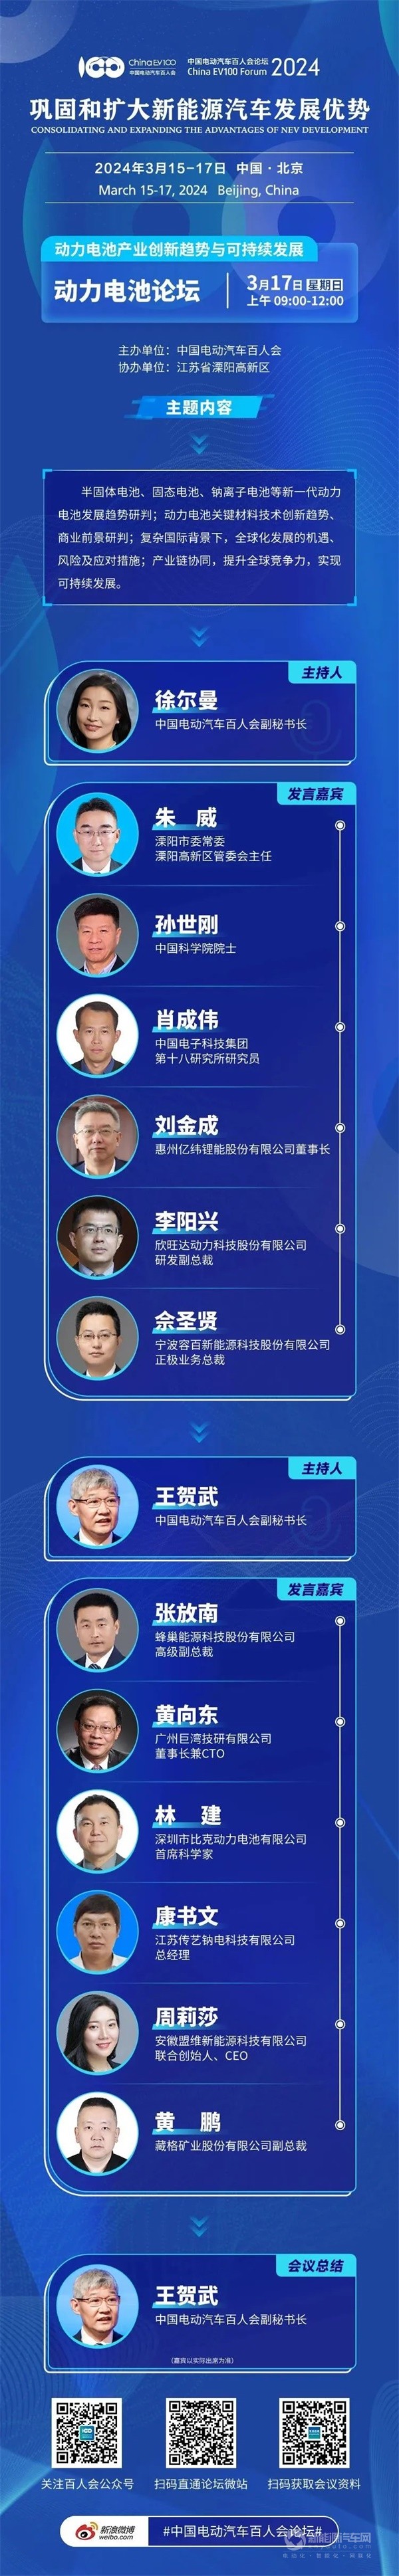 百人会论坛(2024)最新全议程